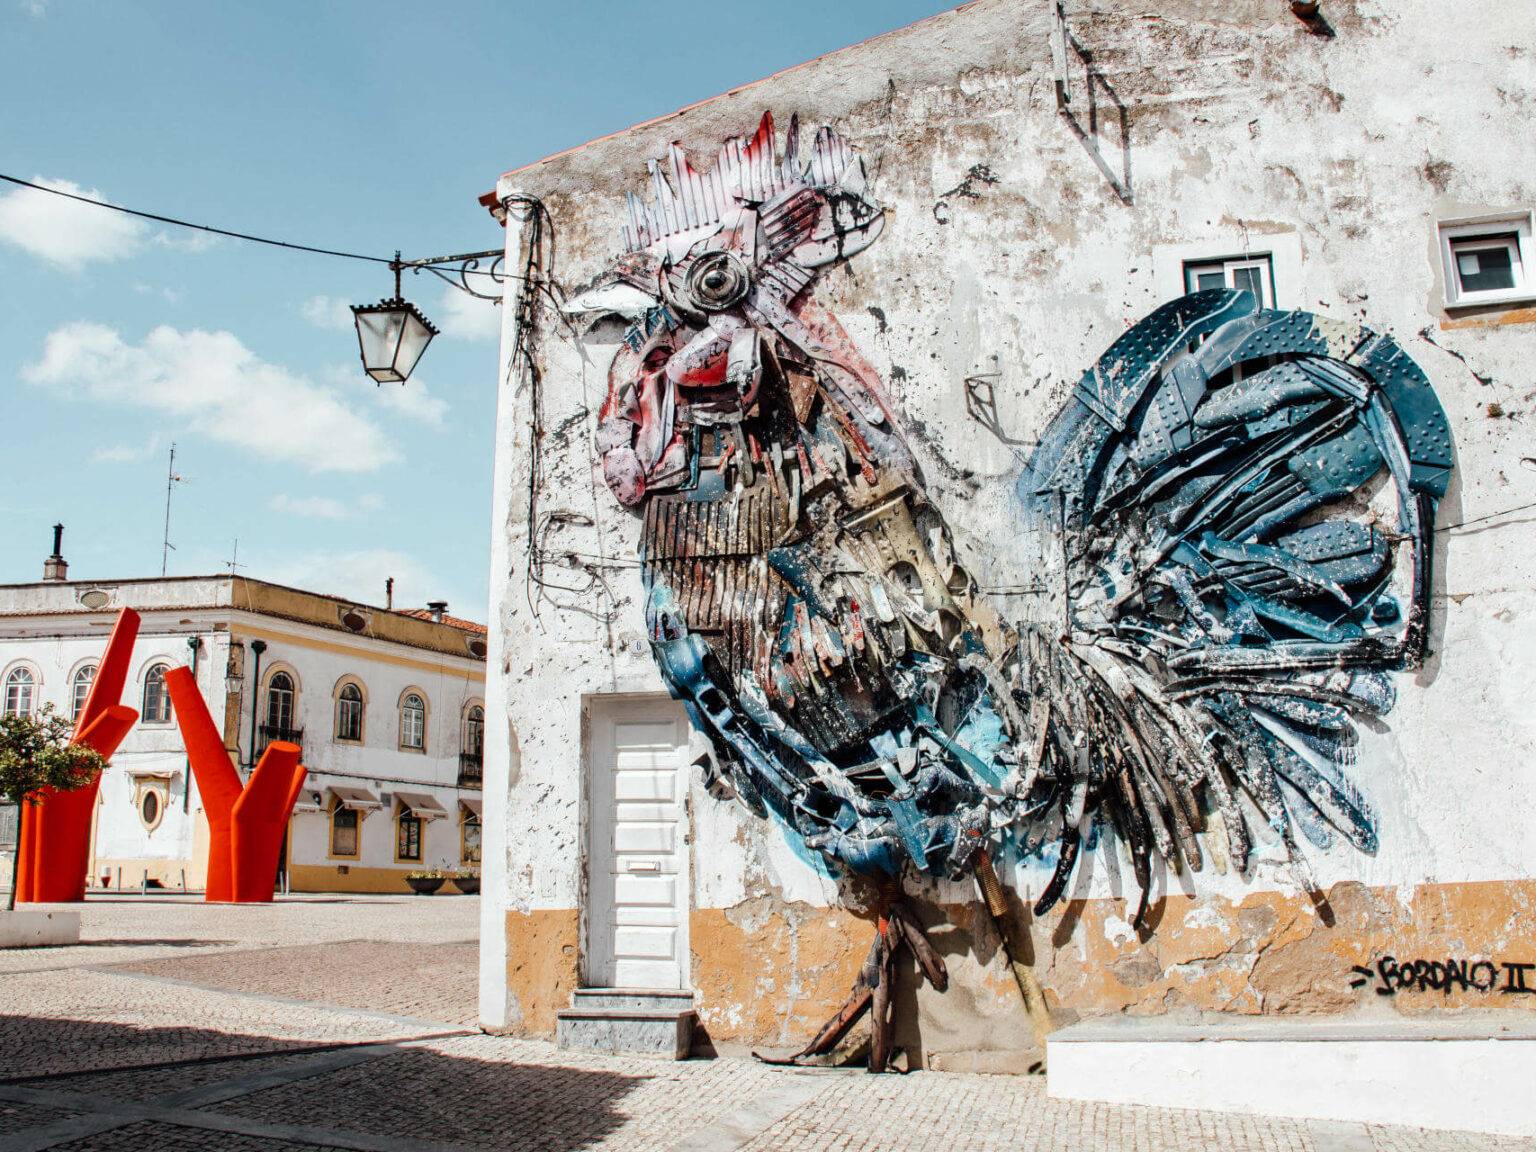 Ein riesiger künstlerischer Hahn verziert die Wand eines Gebäudes. Eine Sehenswürdigkeit von den Straßen des Alentejos.